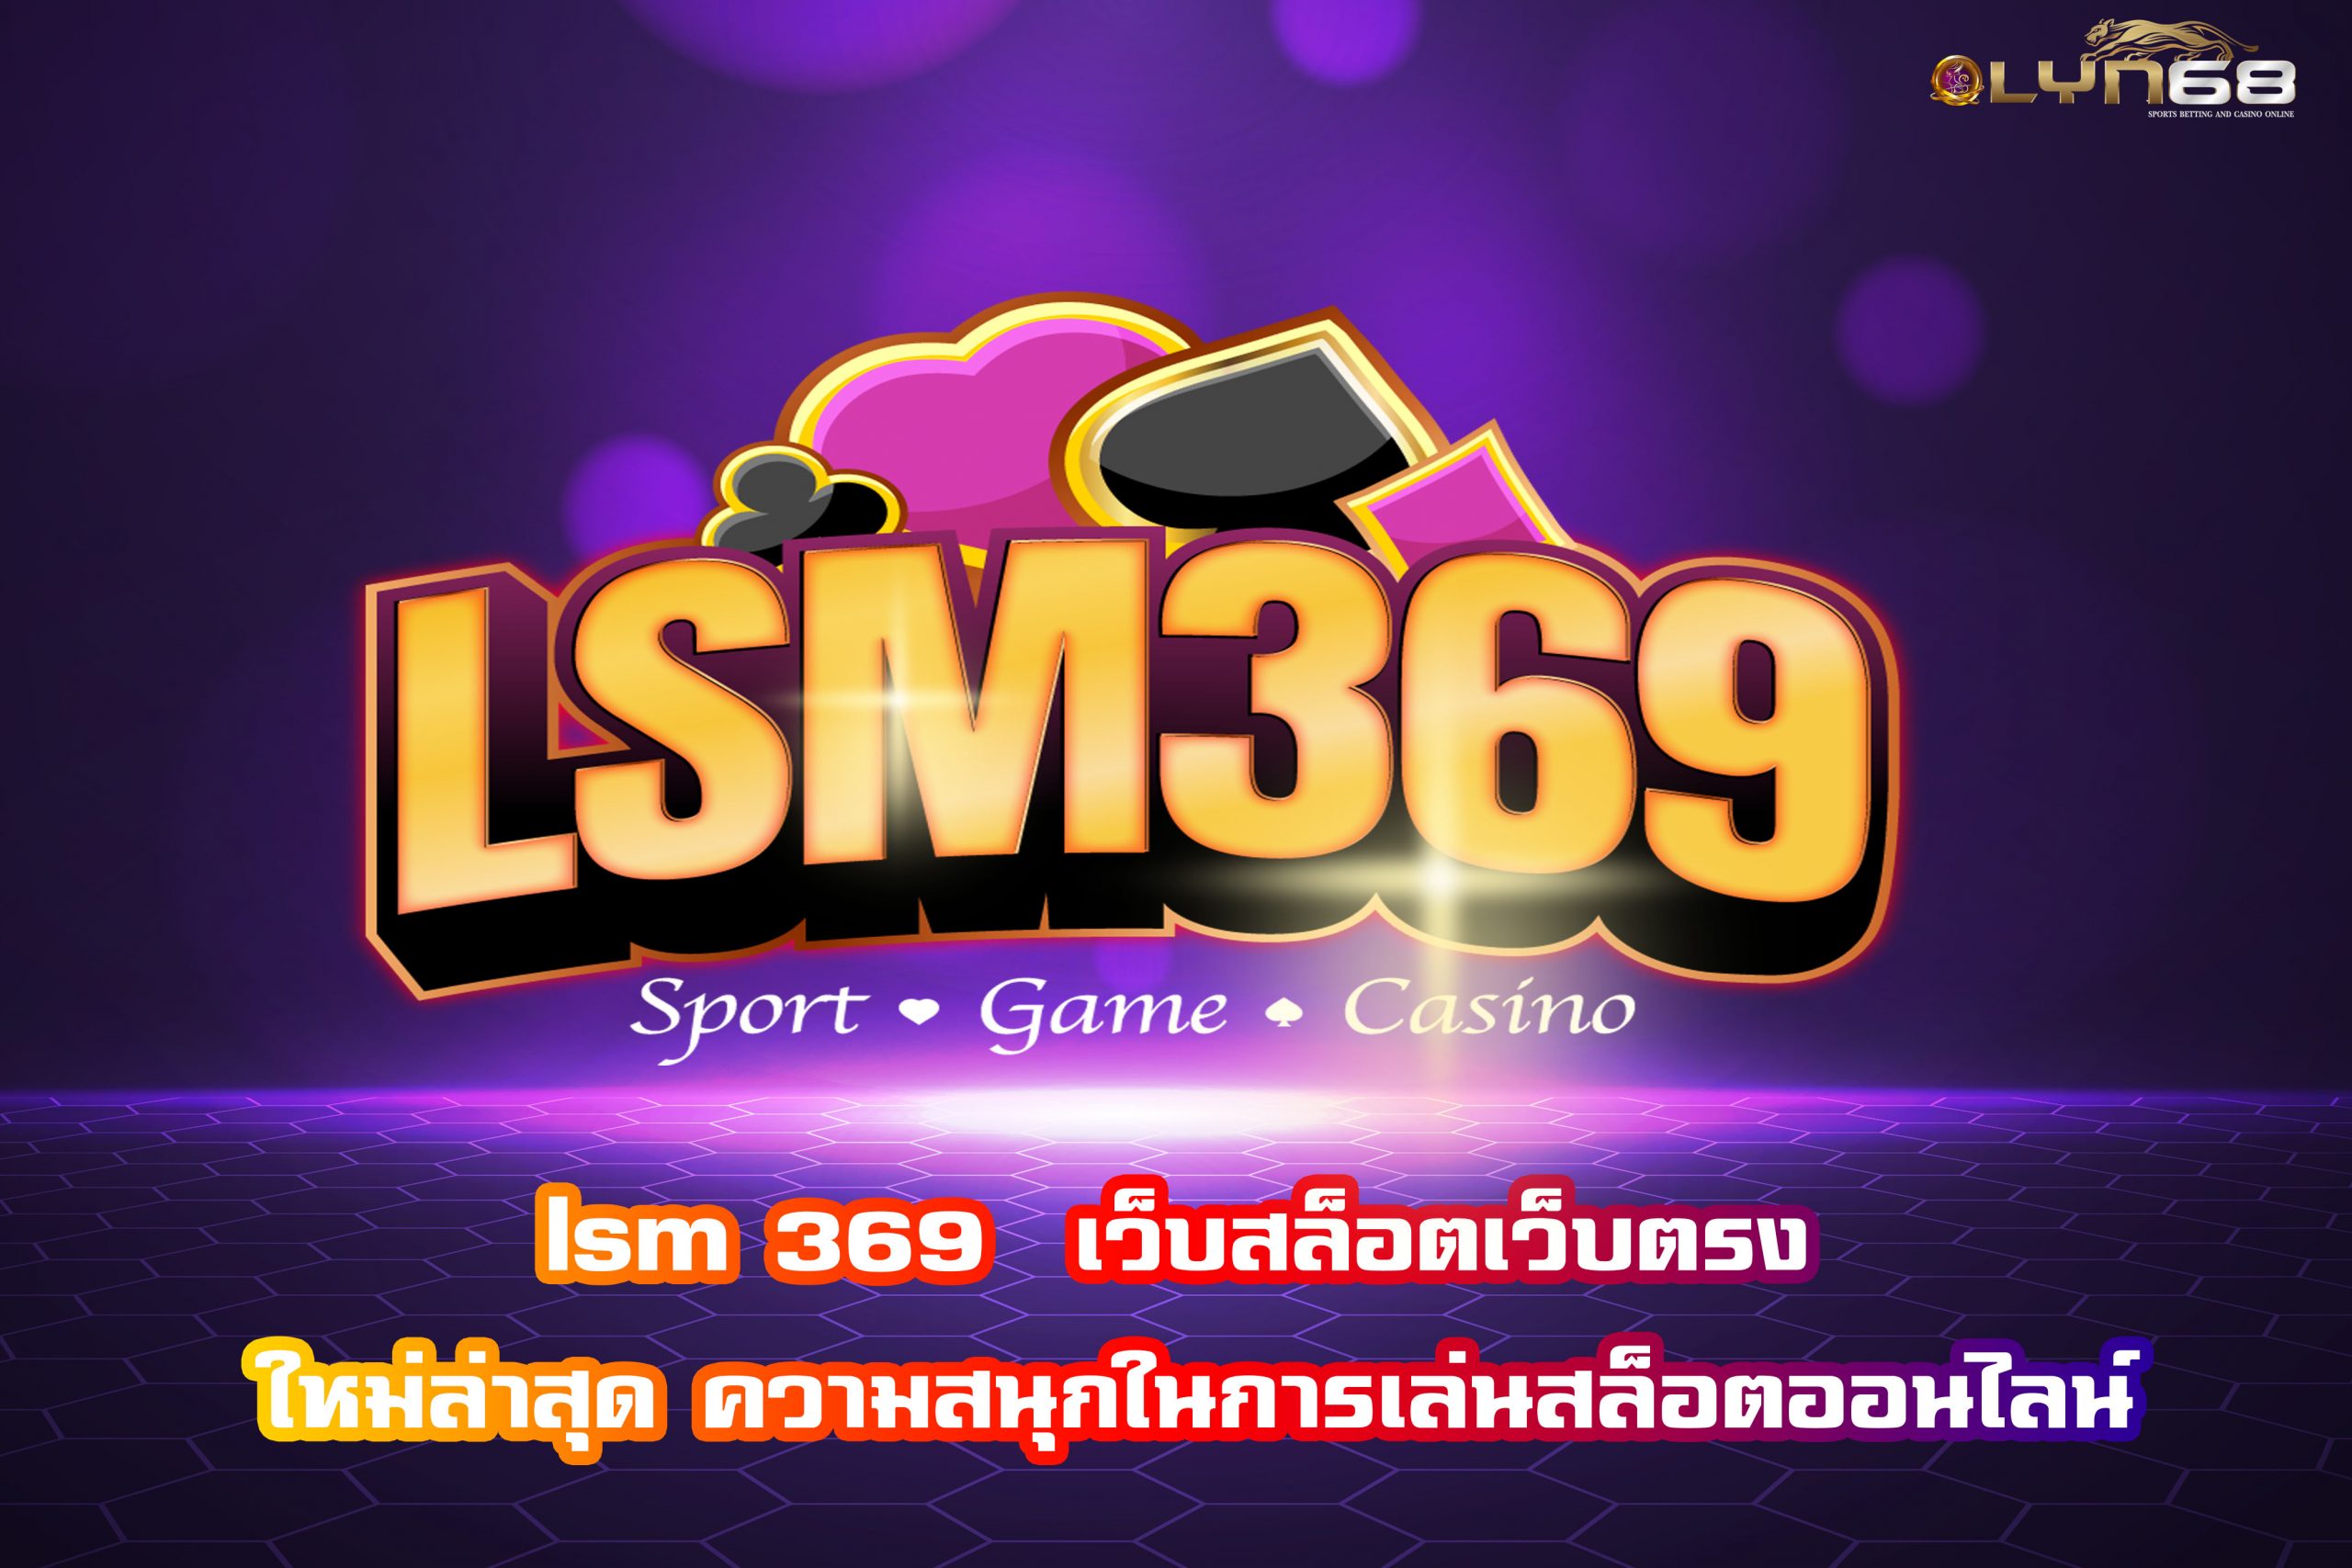 lsm 369  เว็บสล็อตเว็บตรง ใหม่ล่าสุด ความสนุกในการเล่นสล็อตออนไลน์